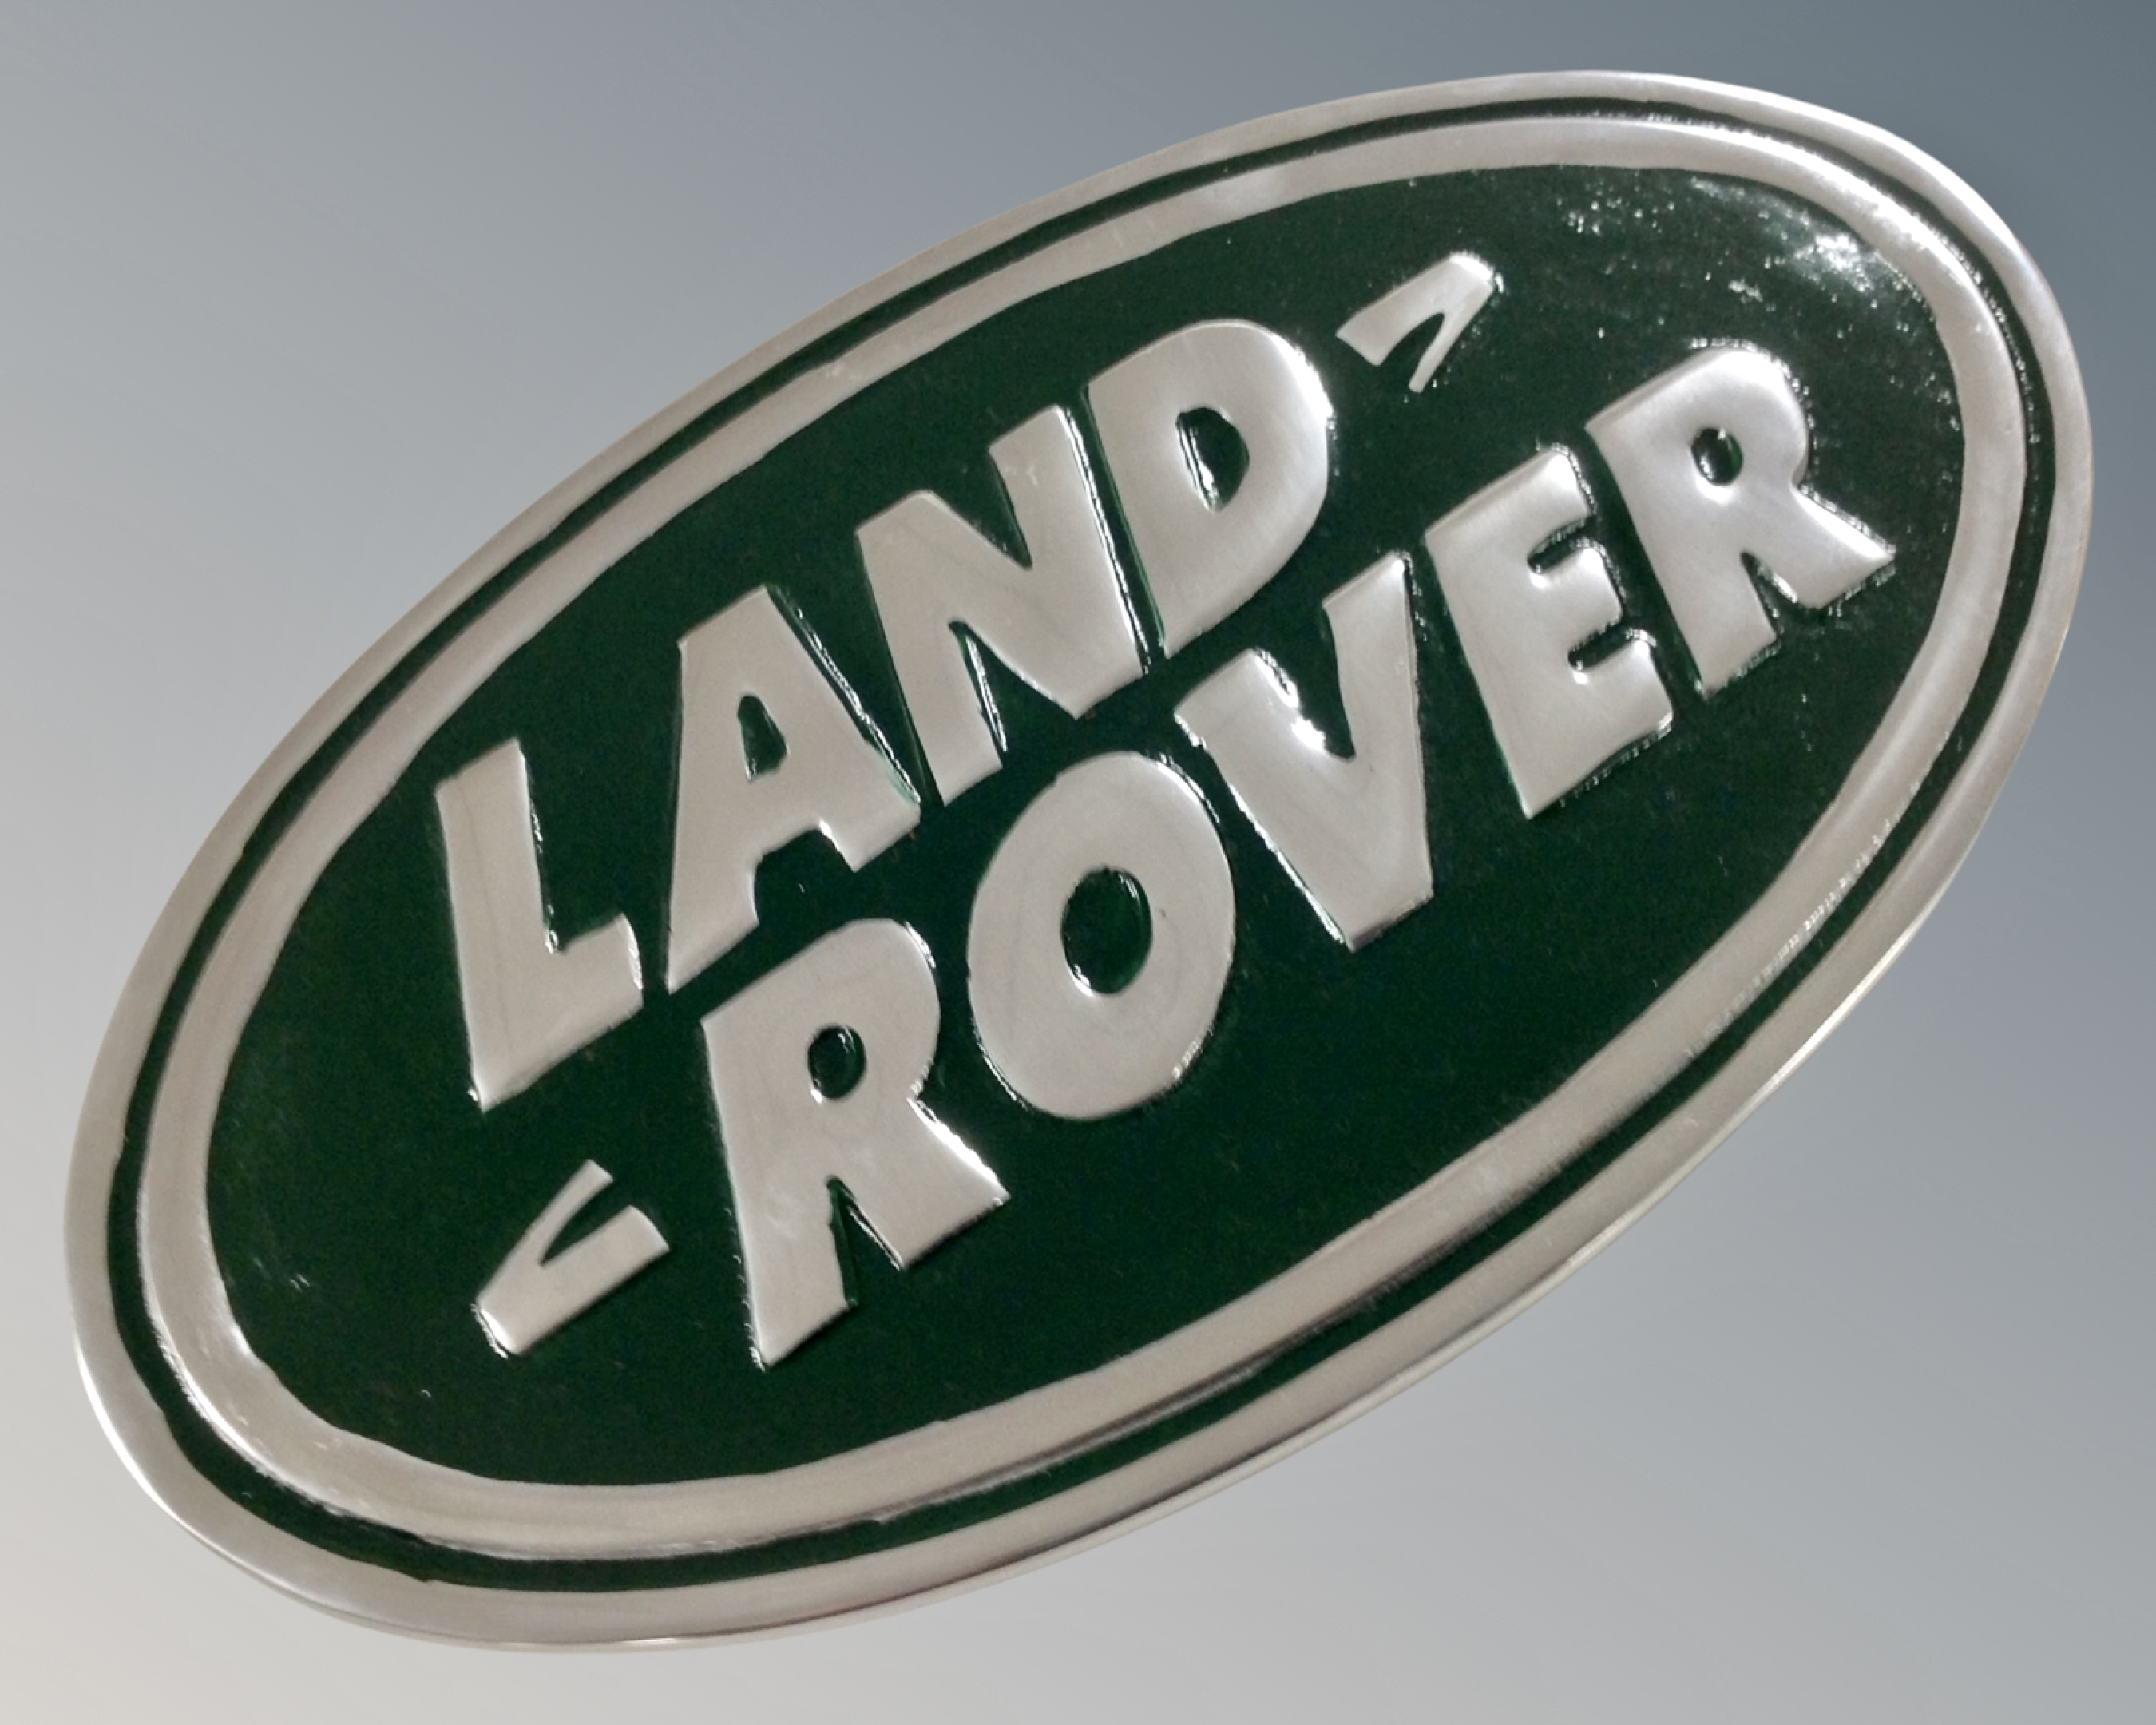 An aluminium Land Rover wall plaque.